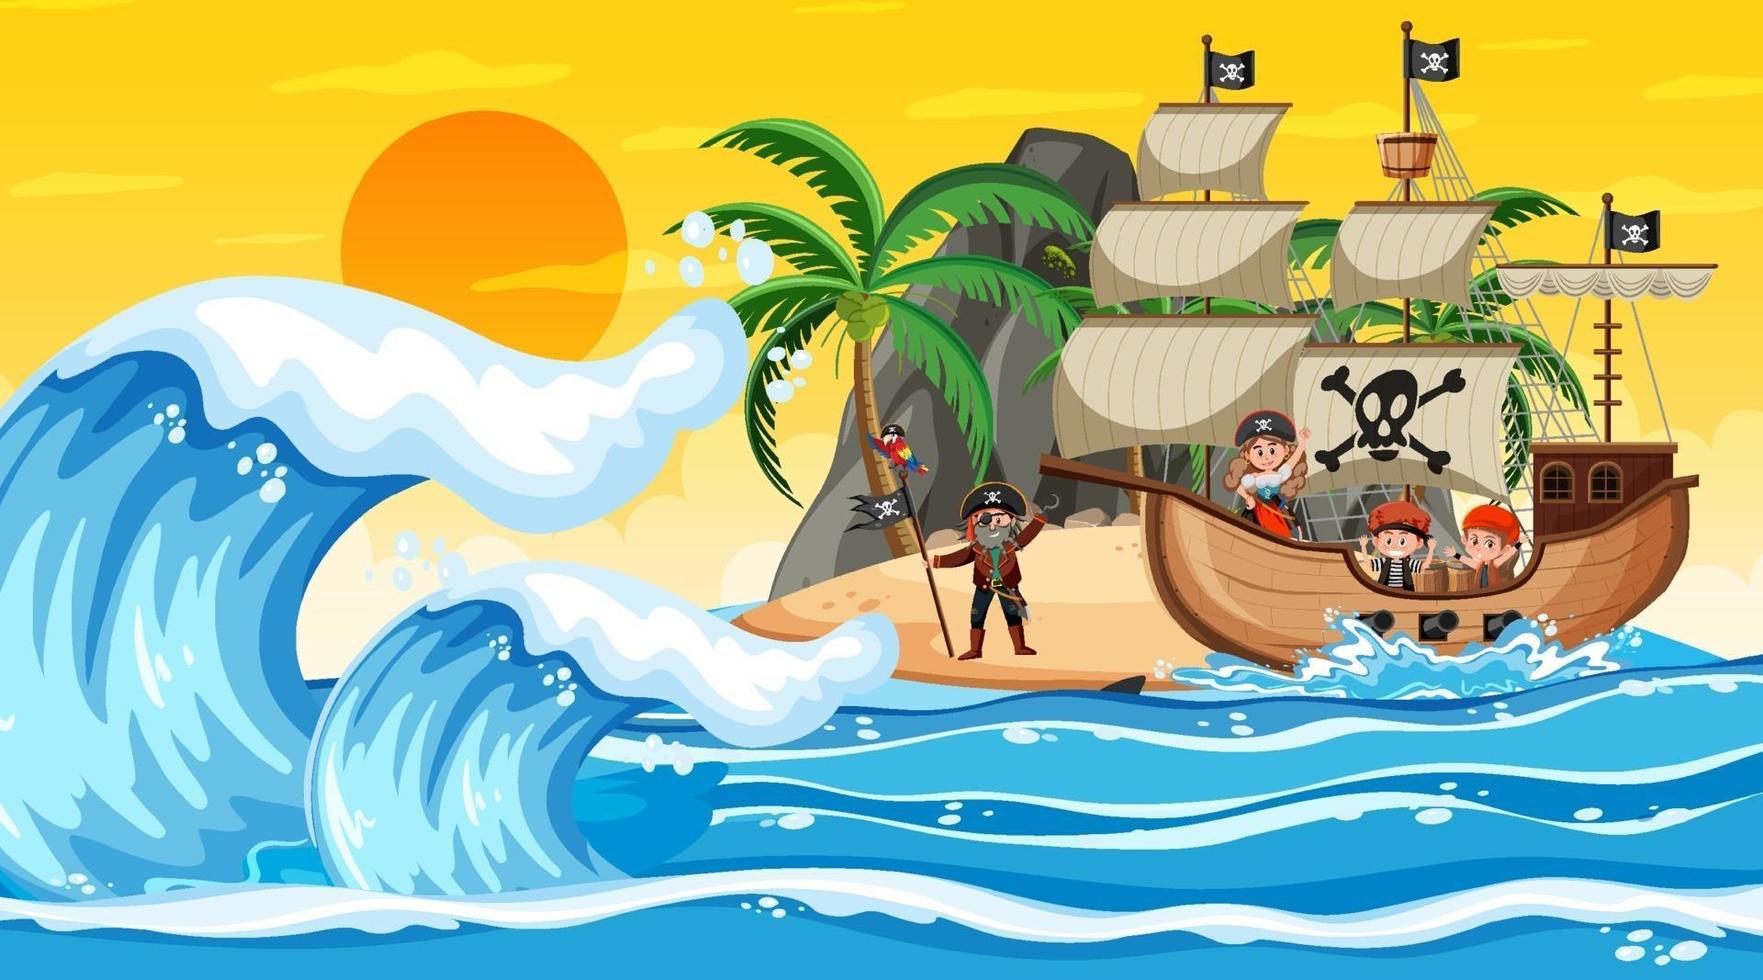 Ozean mit Piratenschiff bei Sonnenuntergangsszene im Karikaturstil vektor